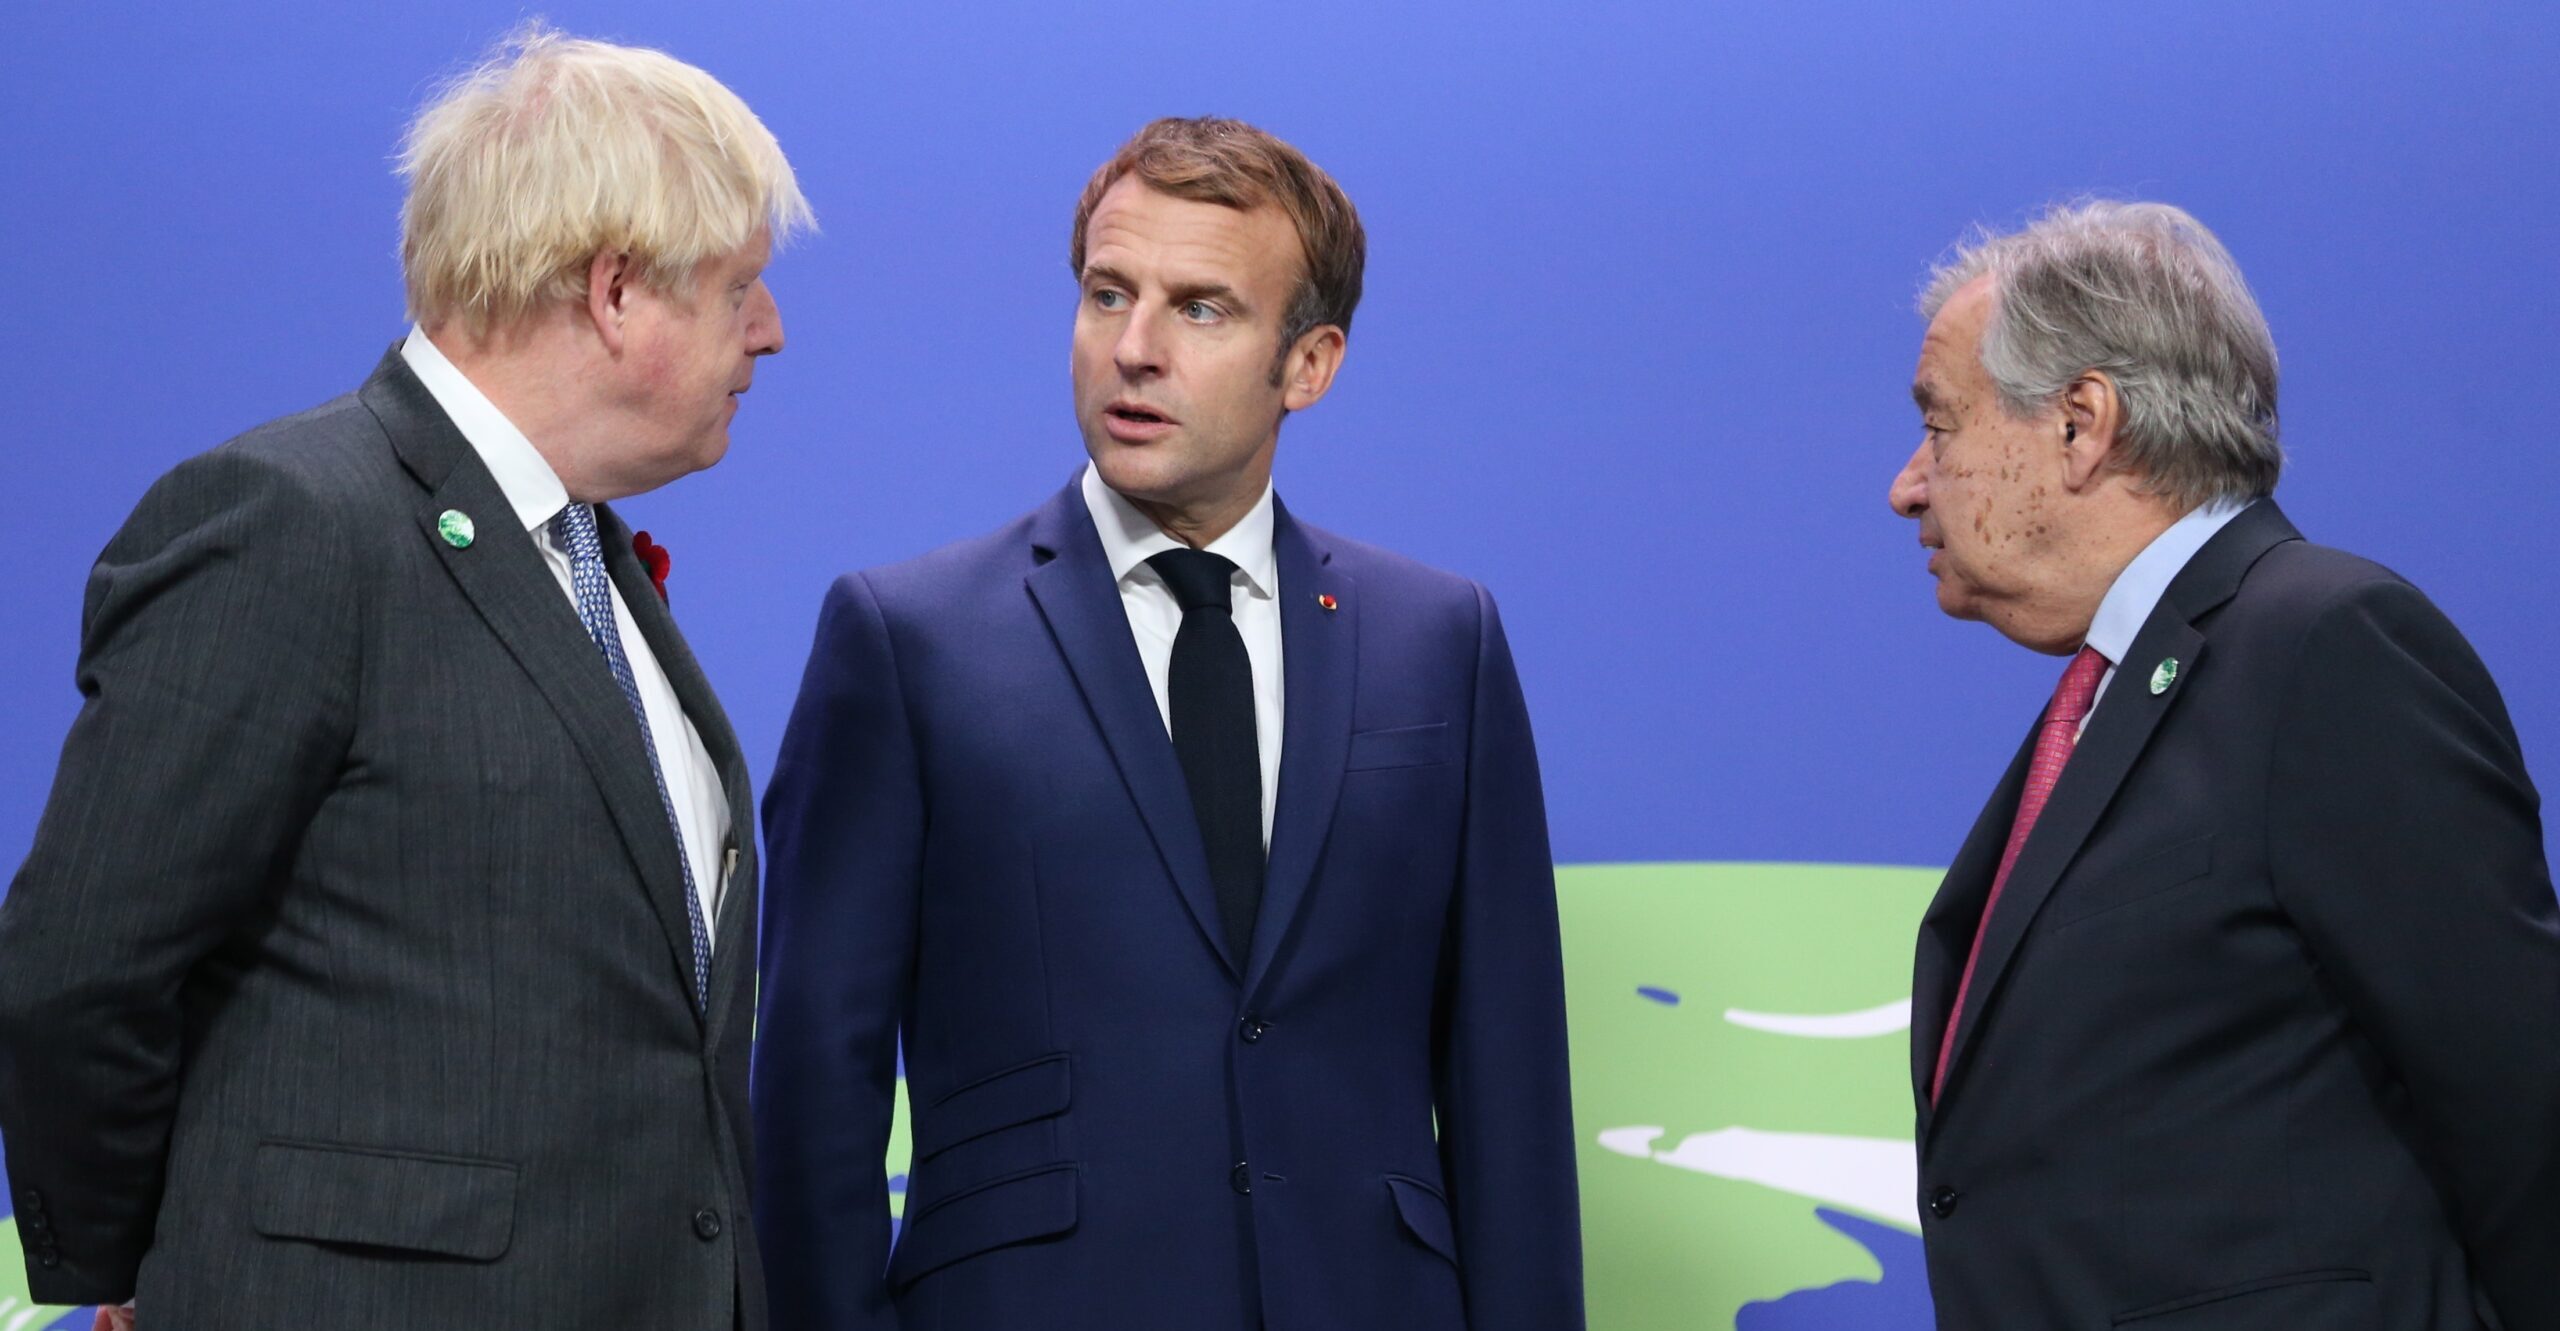 El primer ministre britànic, Boris Johnson, i el secretari general de l'ONU, Antonio Guterres, donen la benvinguda al president francès, Emmanuel Macron, a la Cimera pel Clima. Fotografia: EFE/EPA/ROBERT PERRY